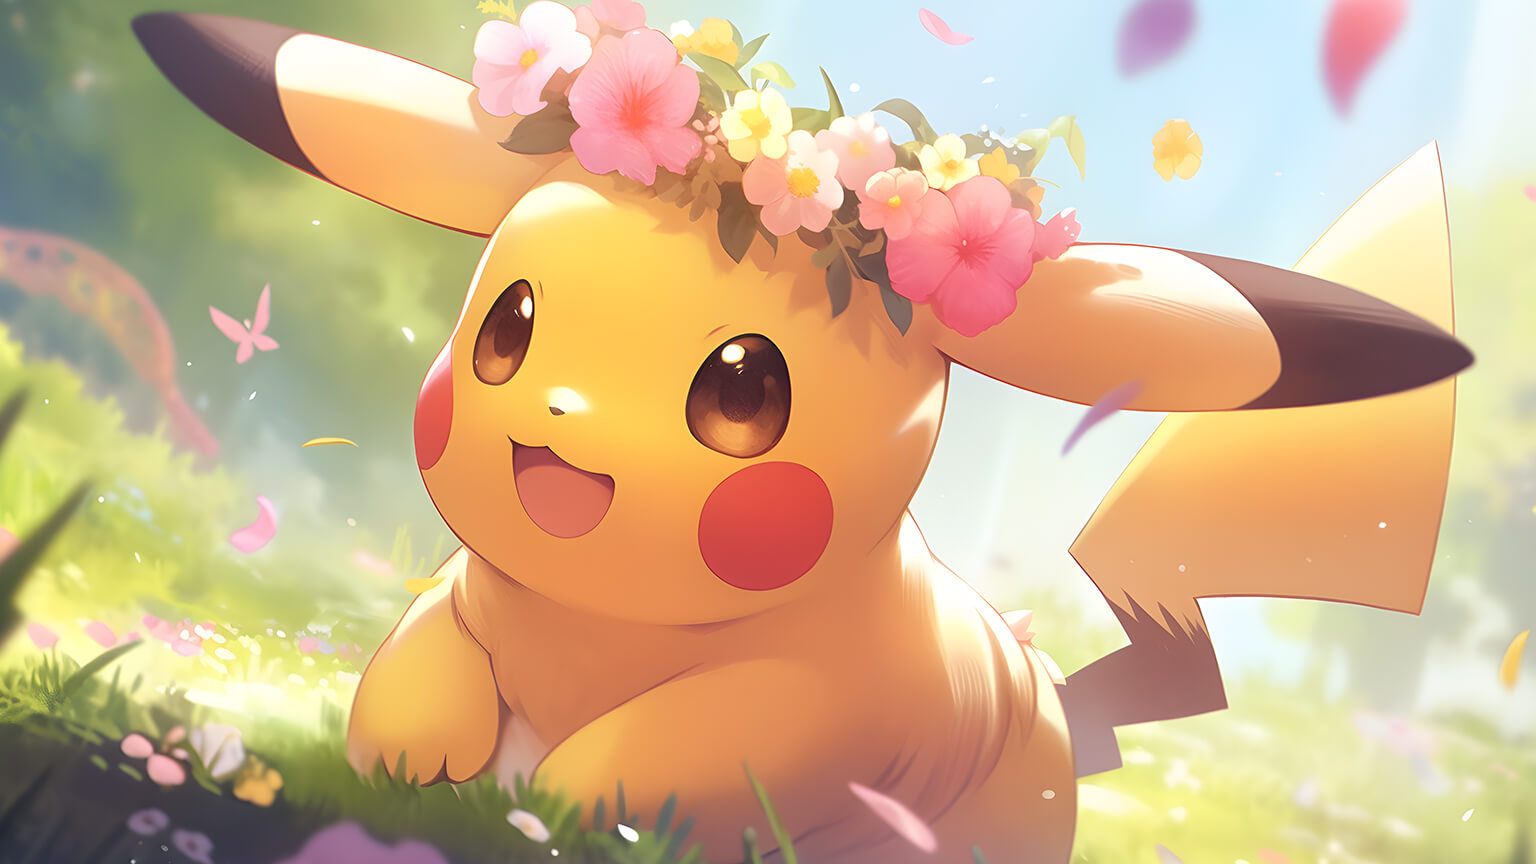 Cute Pikachu & Flowers Pokemon